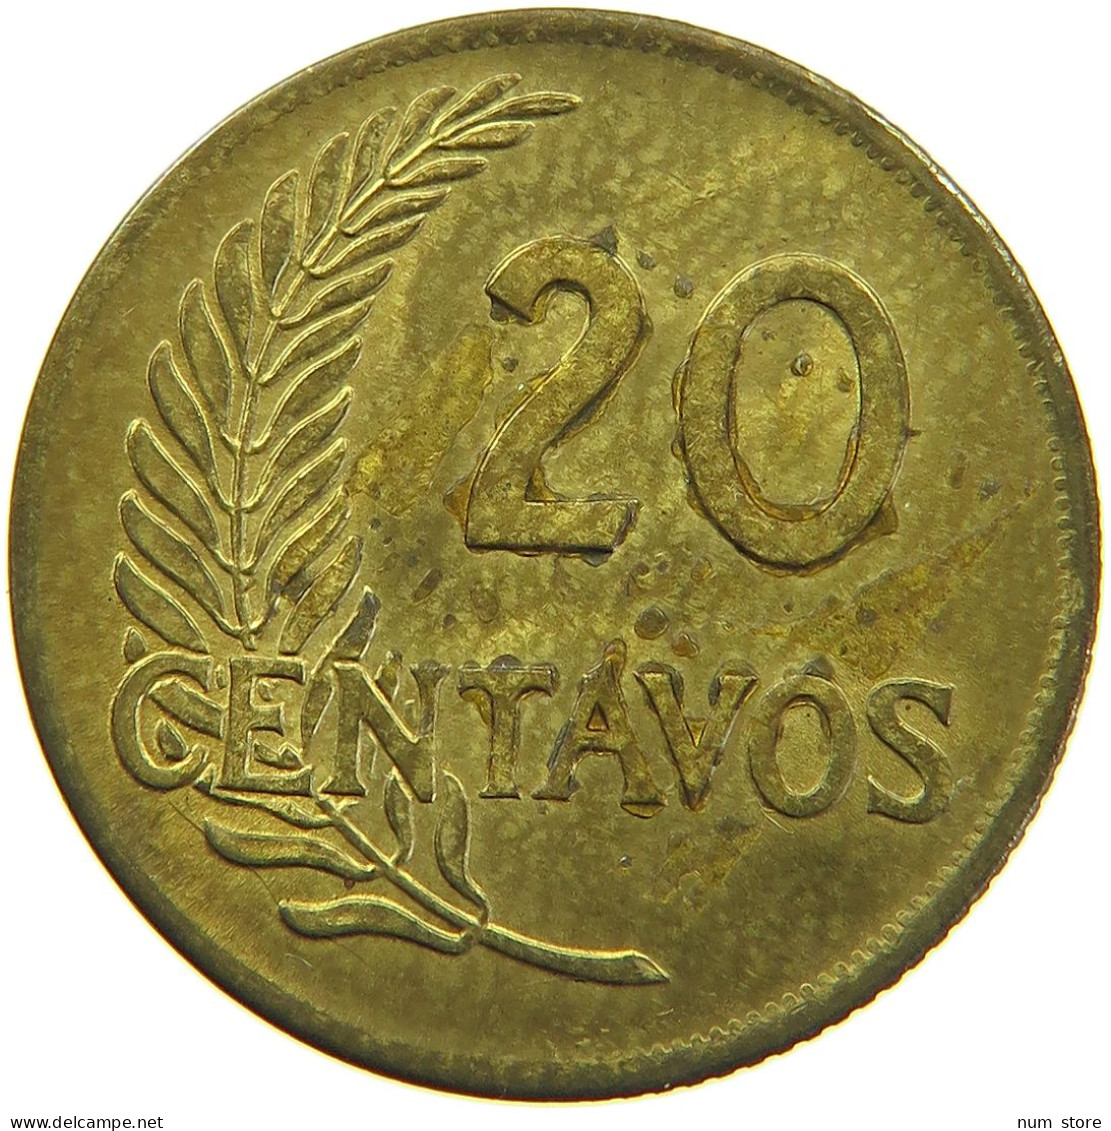 PERU 20 CENTAVOS 1964 #t030 0089 - Peru